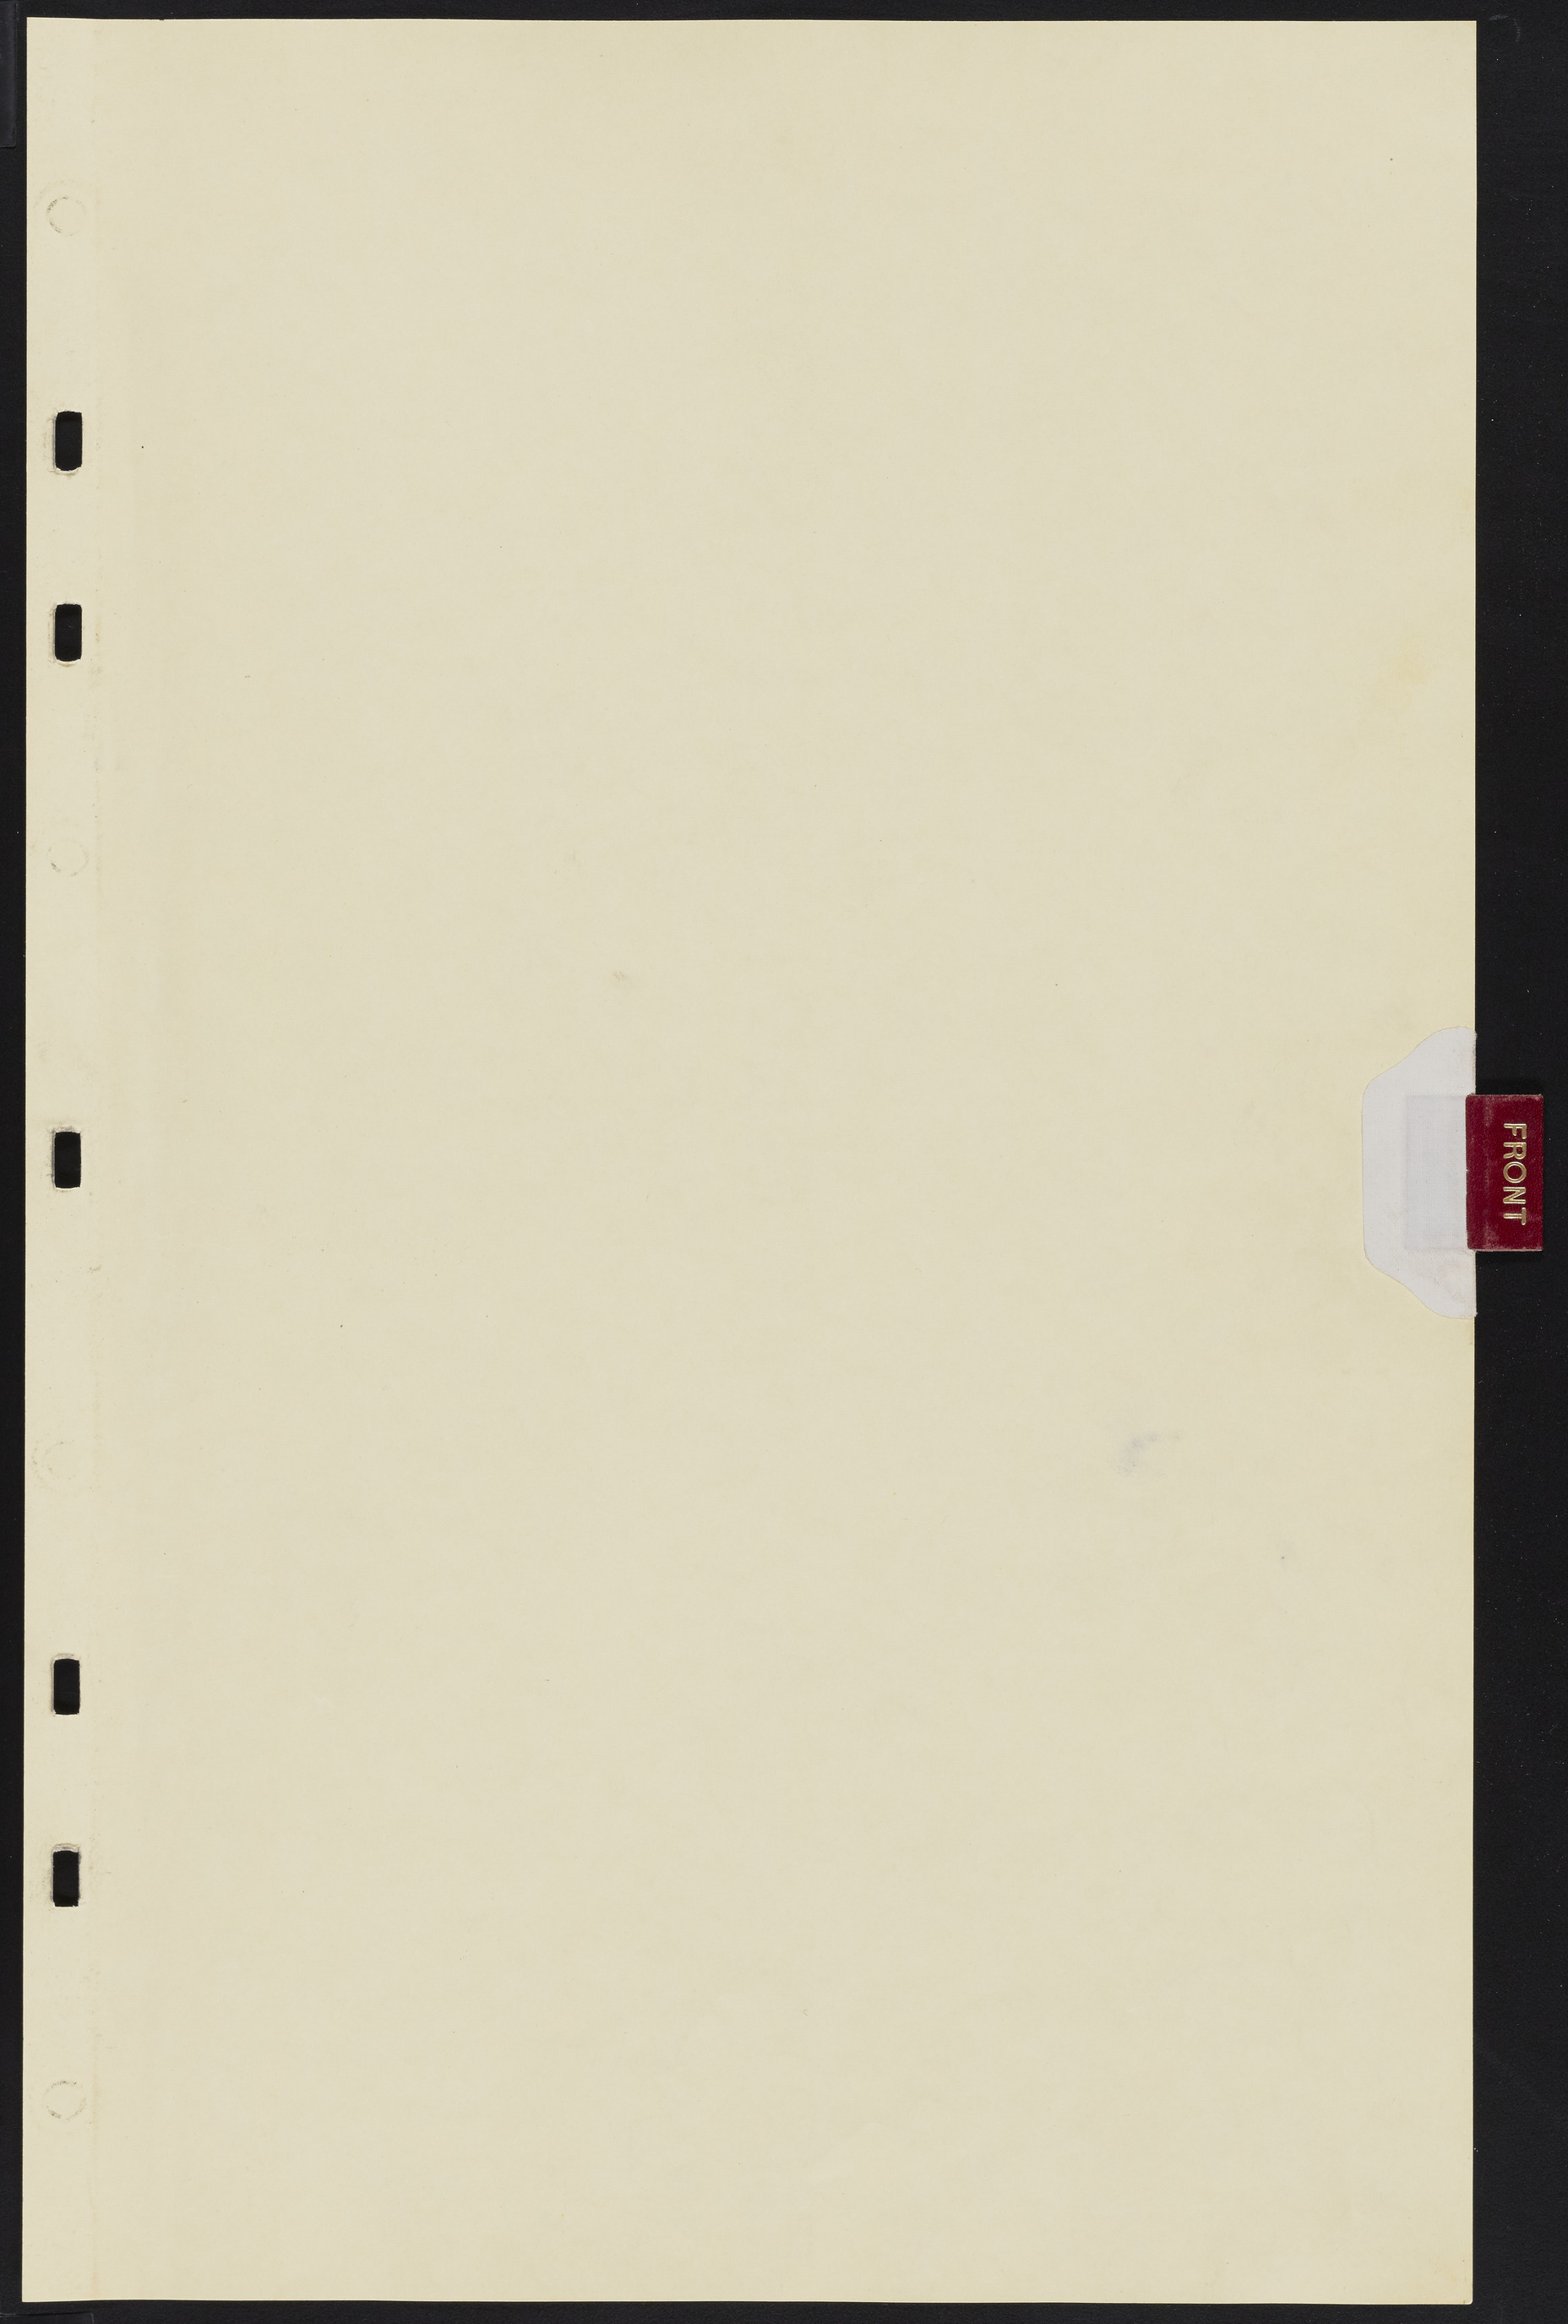 Las Vegas City Commission Minutes, August 11, 1942 to December 30, 1946, lvc000005-5